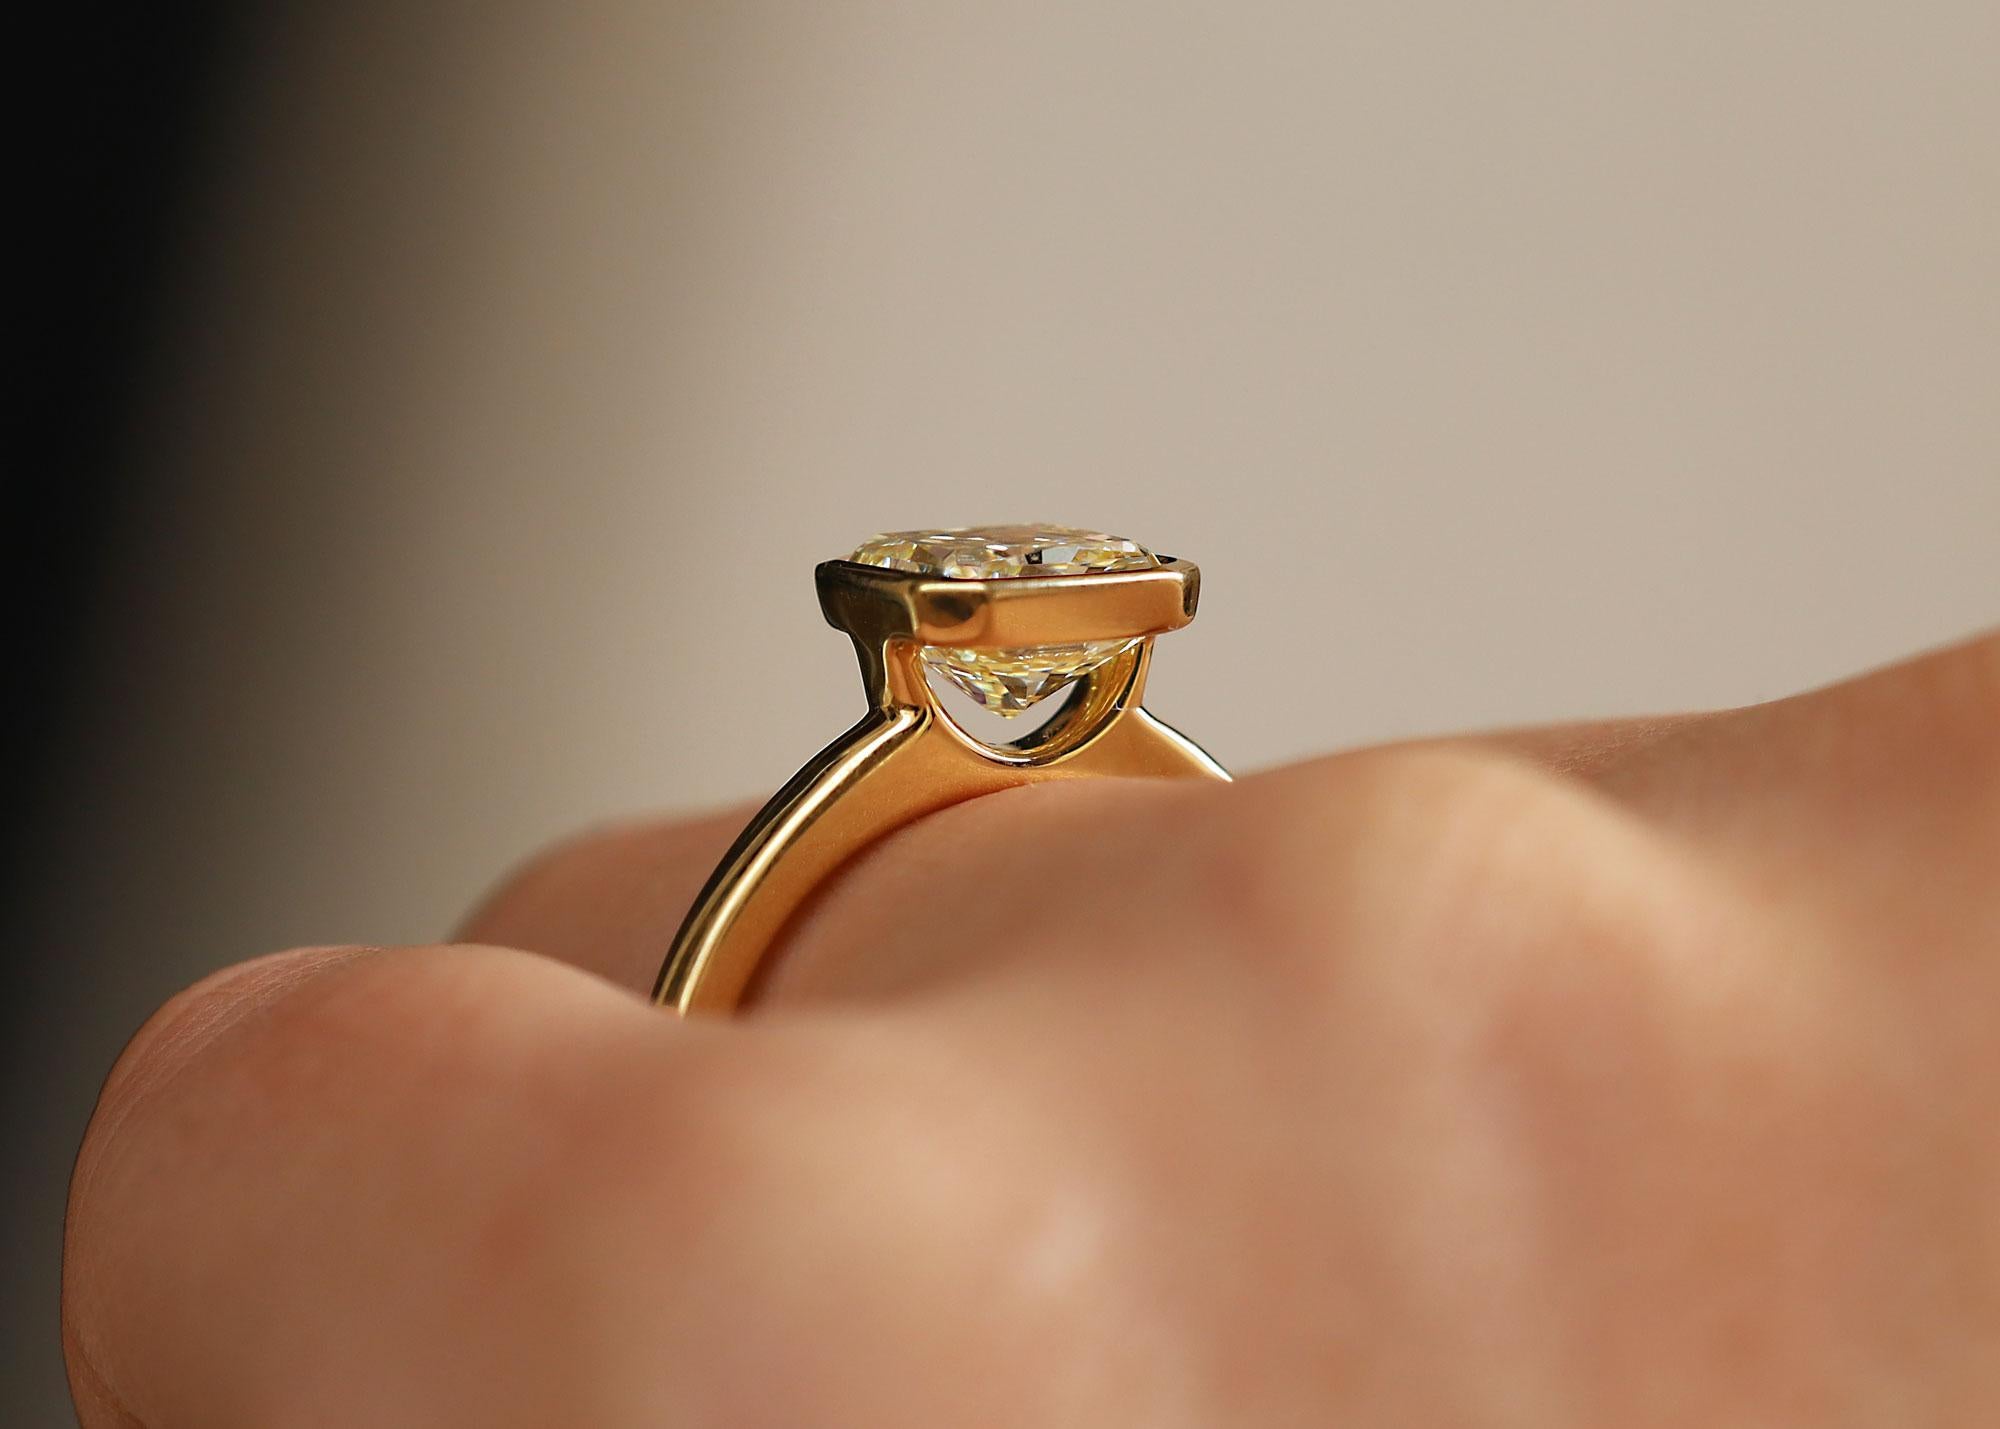 Neu  zu unserer Kollektion gehört dieser 2,09 Karat schwere Solitär-Verlobungsring mit einem gelben Naturdiamanten. Die Schlichtheit der reichhaltigen Fassung aus 18 Karat Gelbgold verleiht der schönen goldenen Farbe dieses erdgebundenen Diamanten